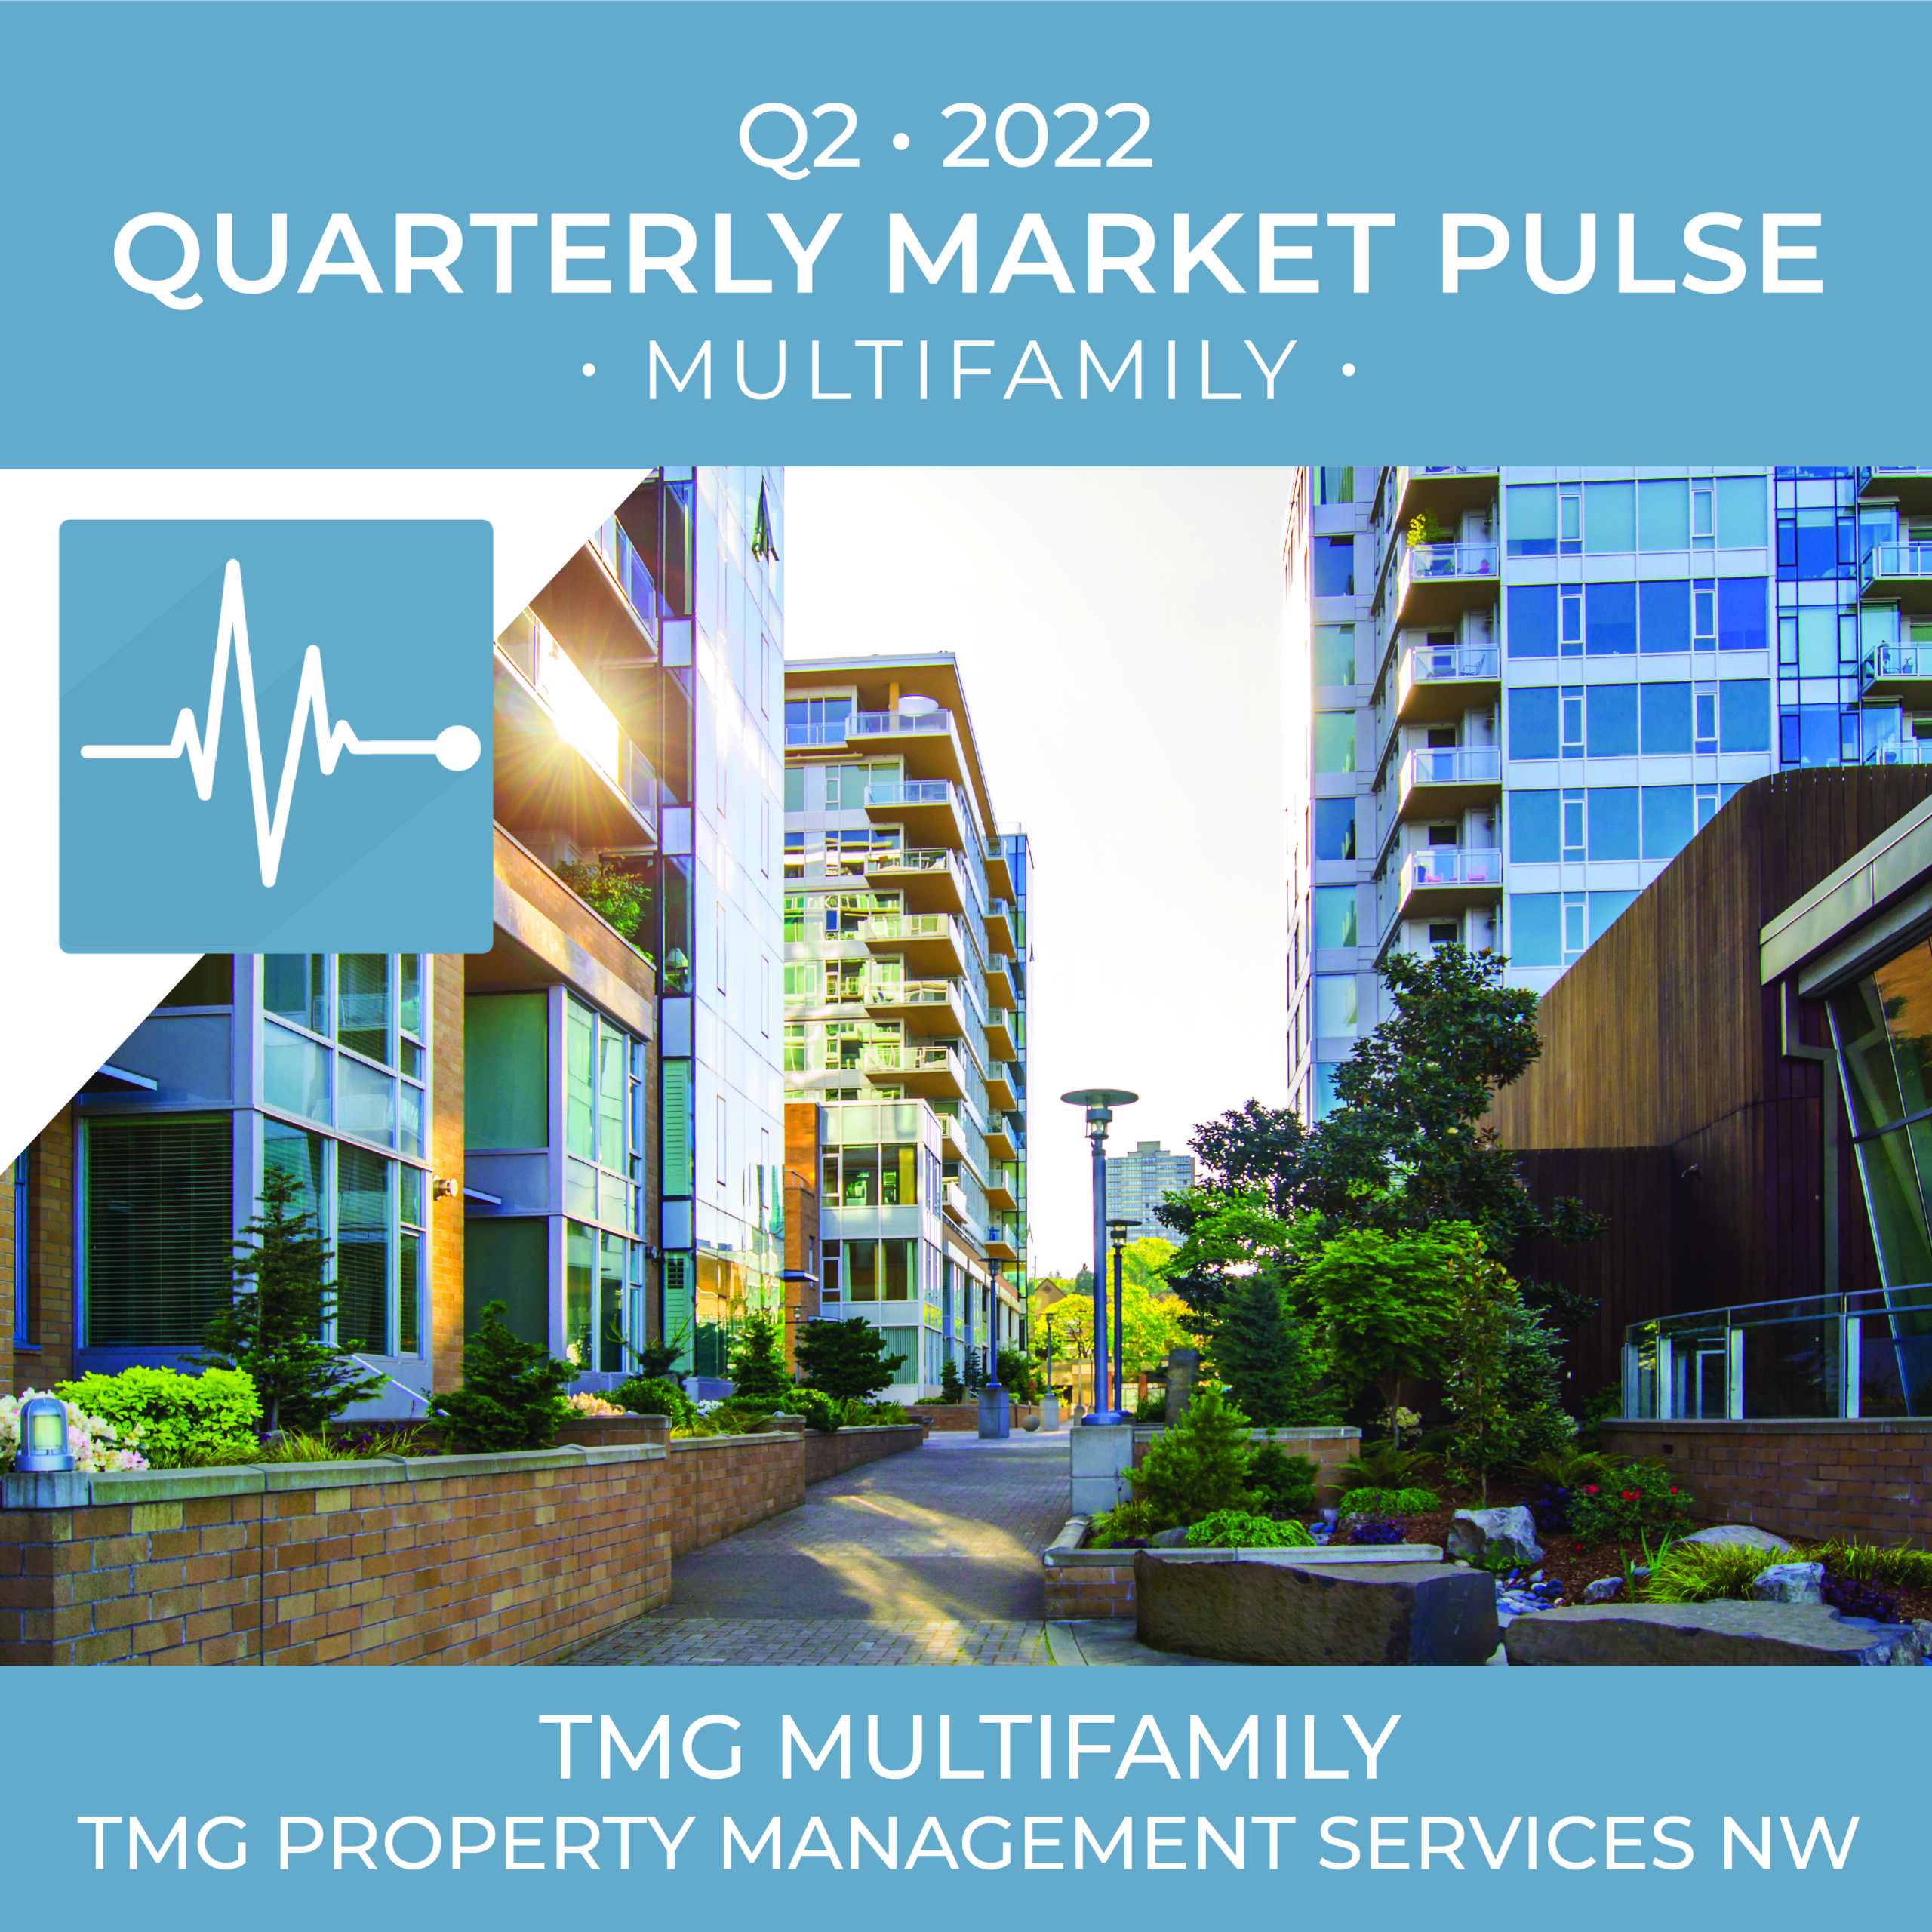 2022 07 27 Q2 MF Market Pulse 01 scaled